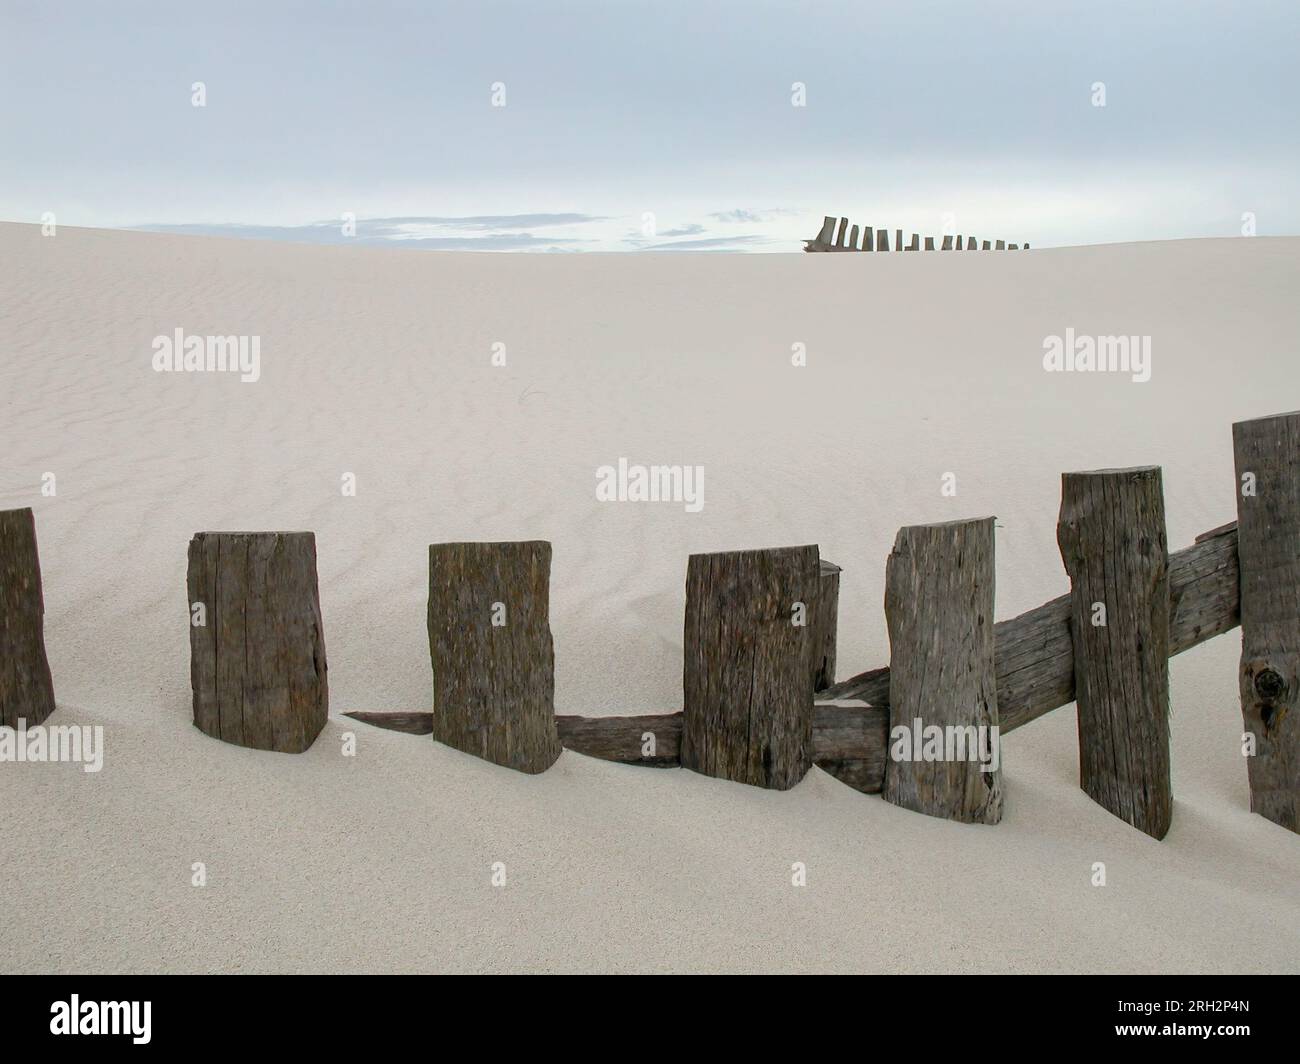 Sanddünen an der portugiesischen Küste mit Zäunen - Foto von den Anfängen der digitalen Technik Stockfoto